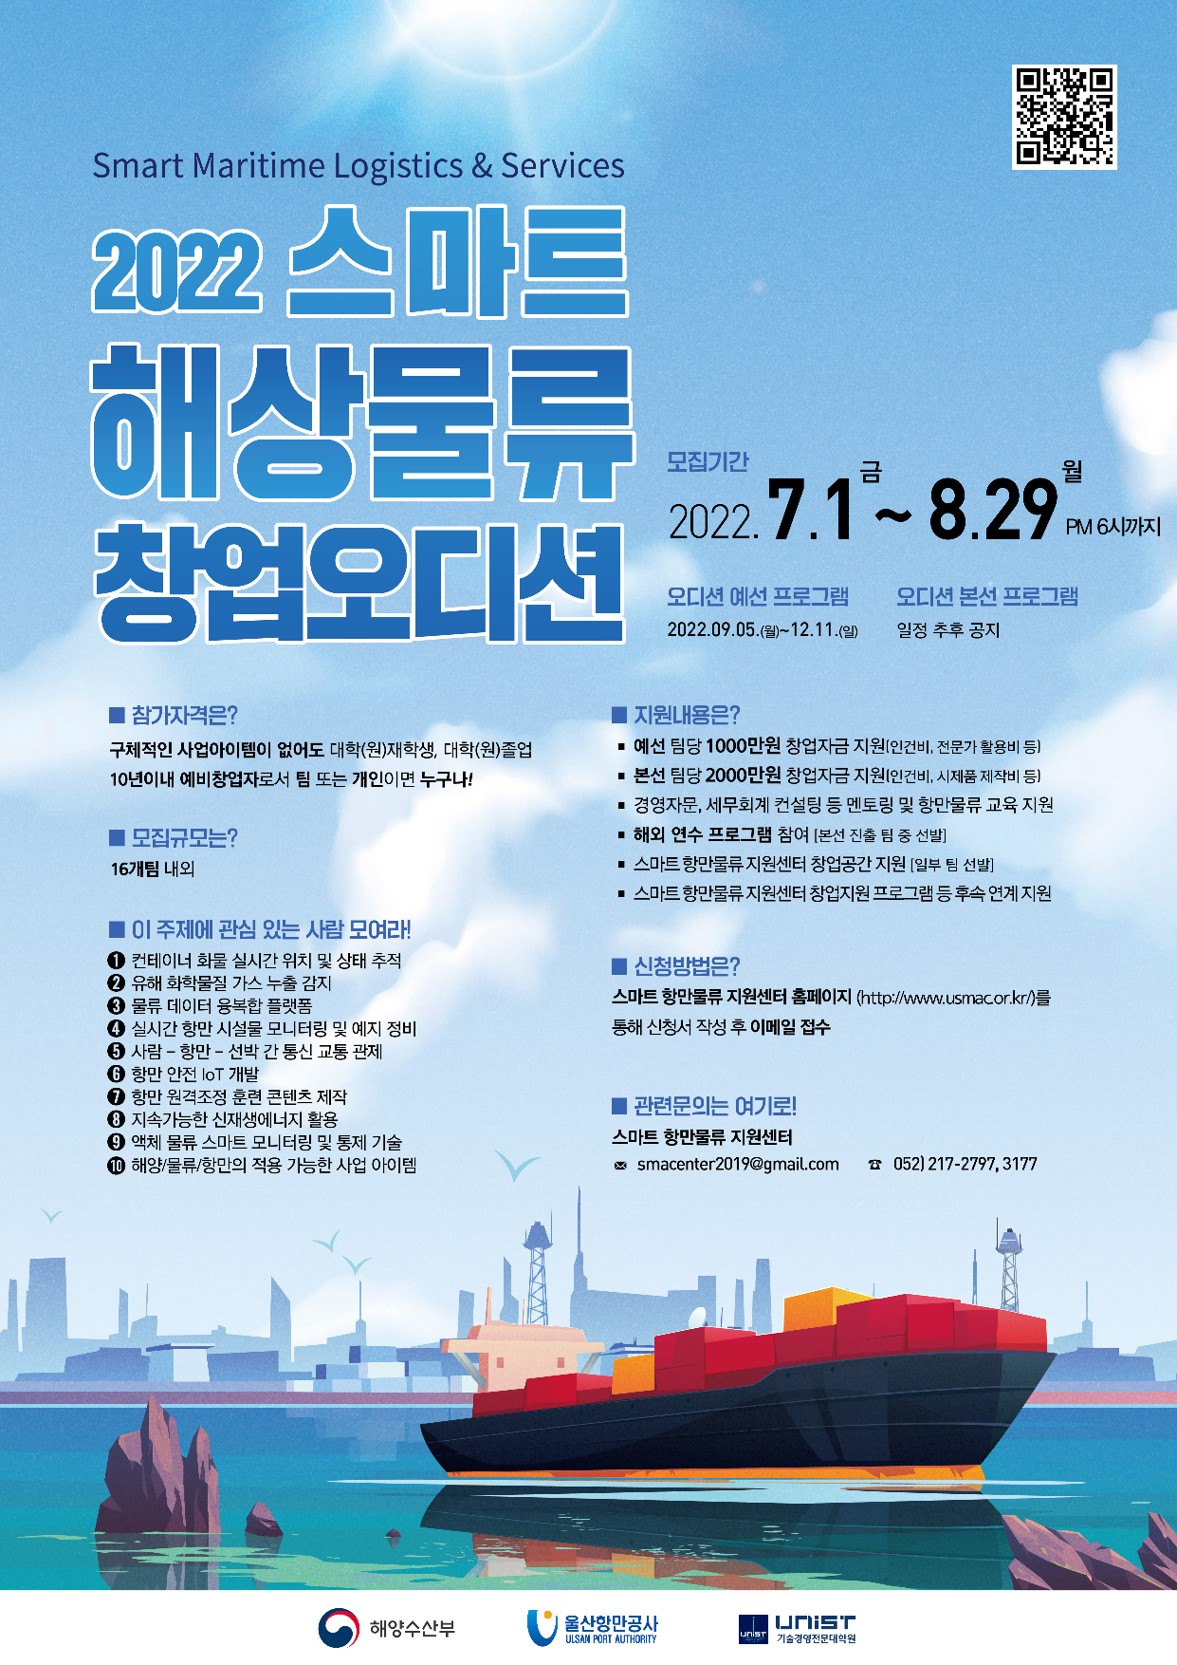 4.2022년 스마트 해상물류 창업오디션 5기 예선 포스터 작은사이즈(_8.29, 6시).jpg